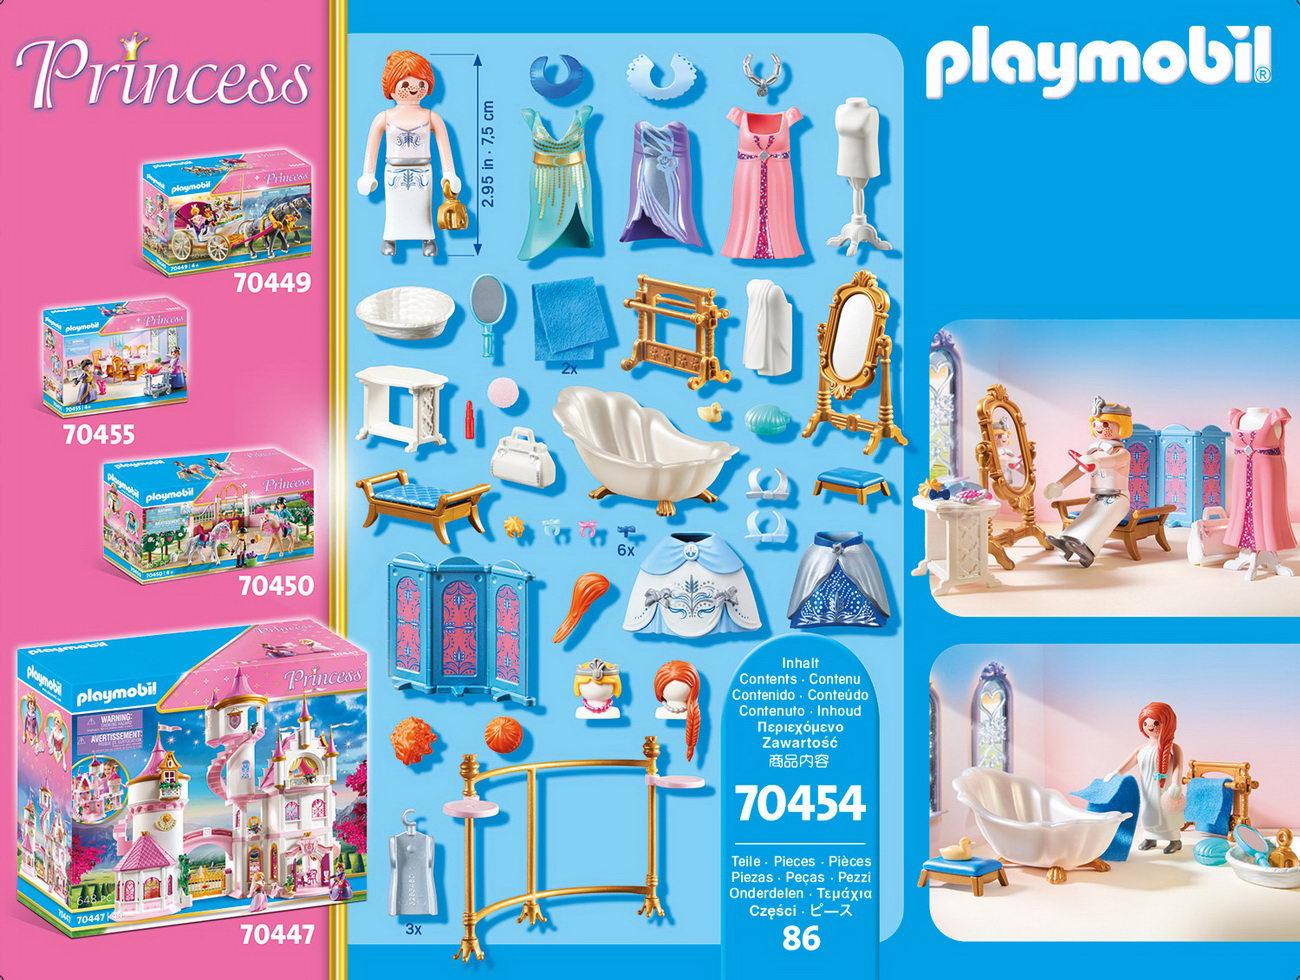 Playmobil 70454 - Ankleidezimmer mit Badewanne - Princess